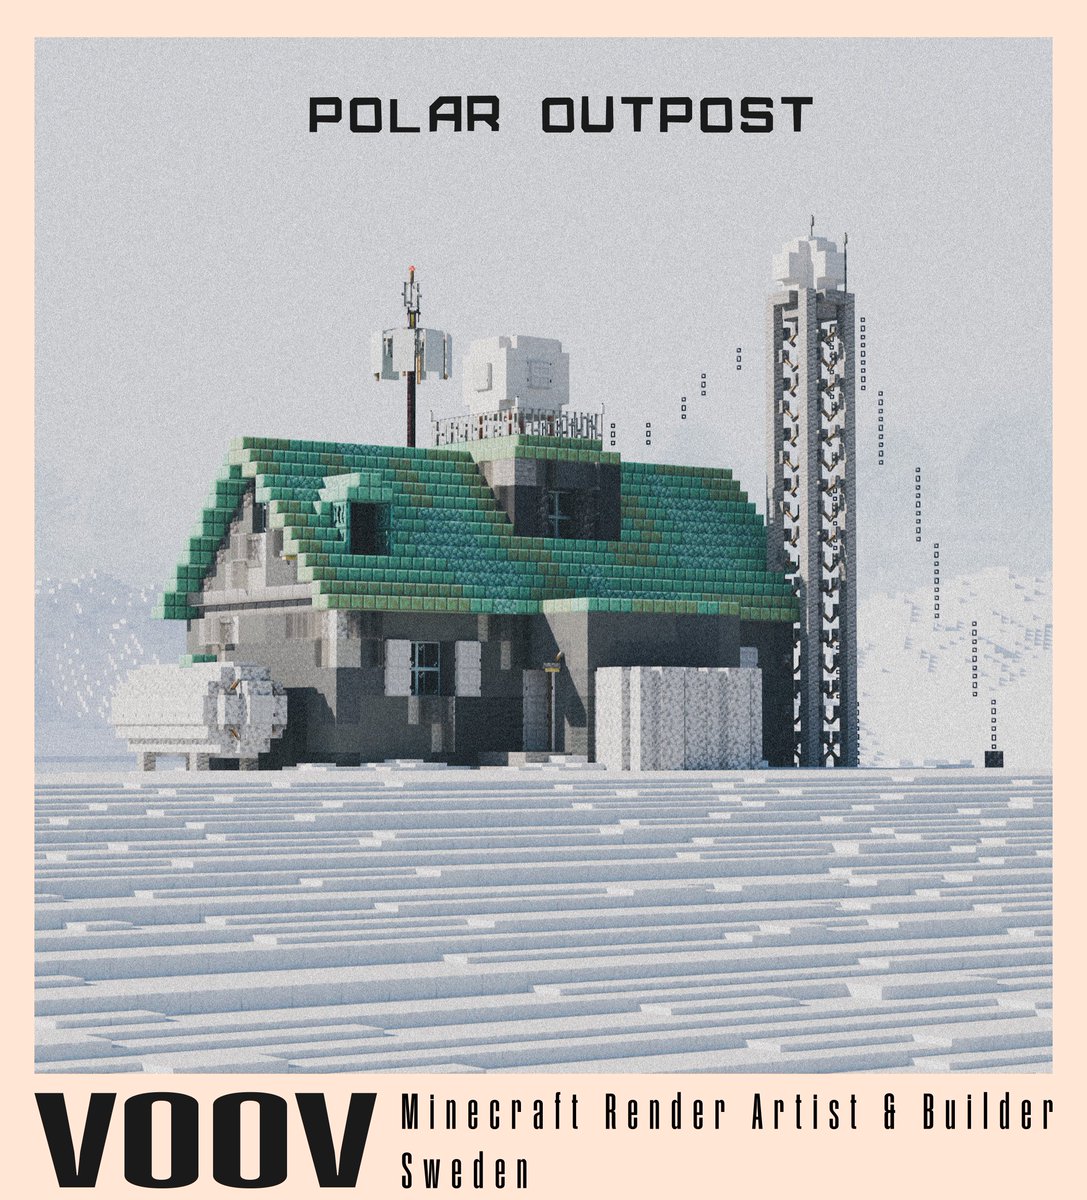 'Polar Outpost'

#minecraftrender #Minecraft #Minecraftbuilds #Blender3d #b3d #minecraft建築コミュ